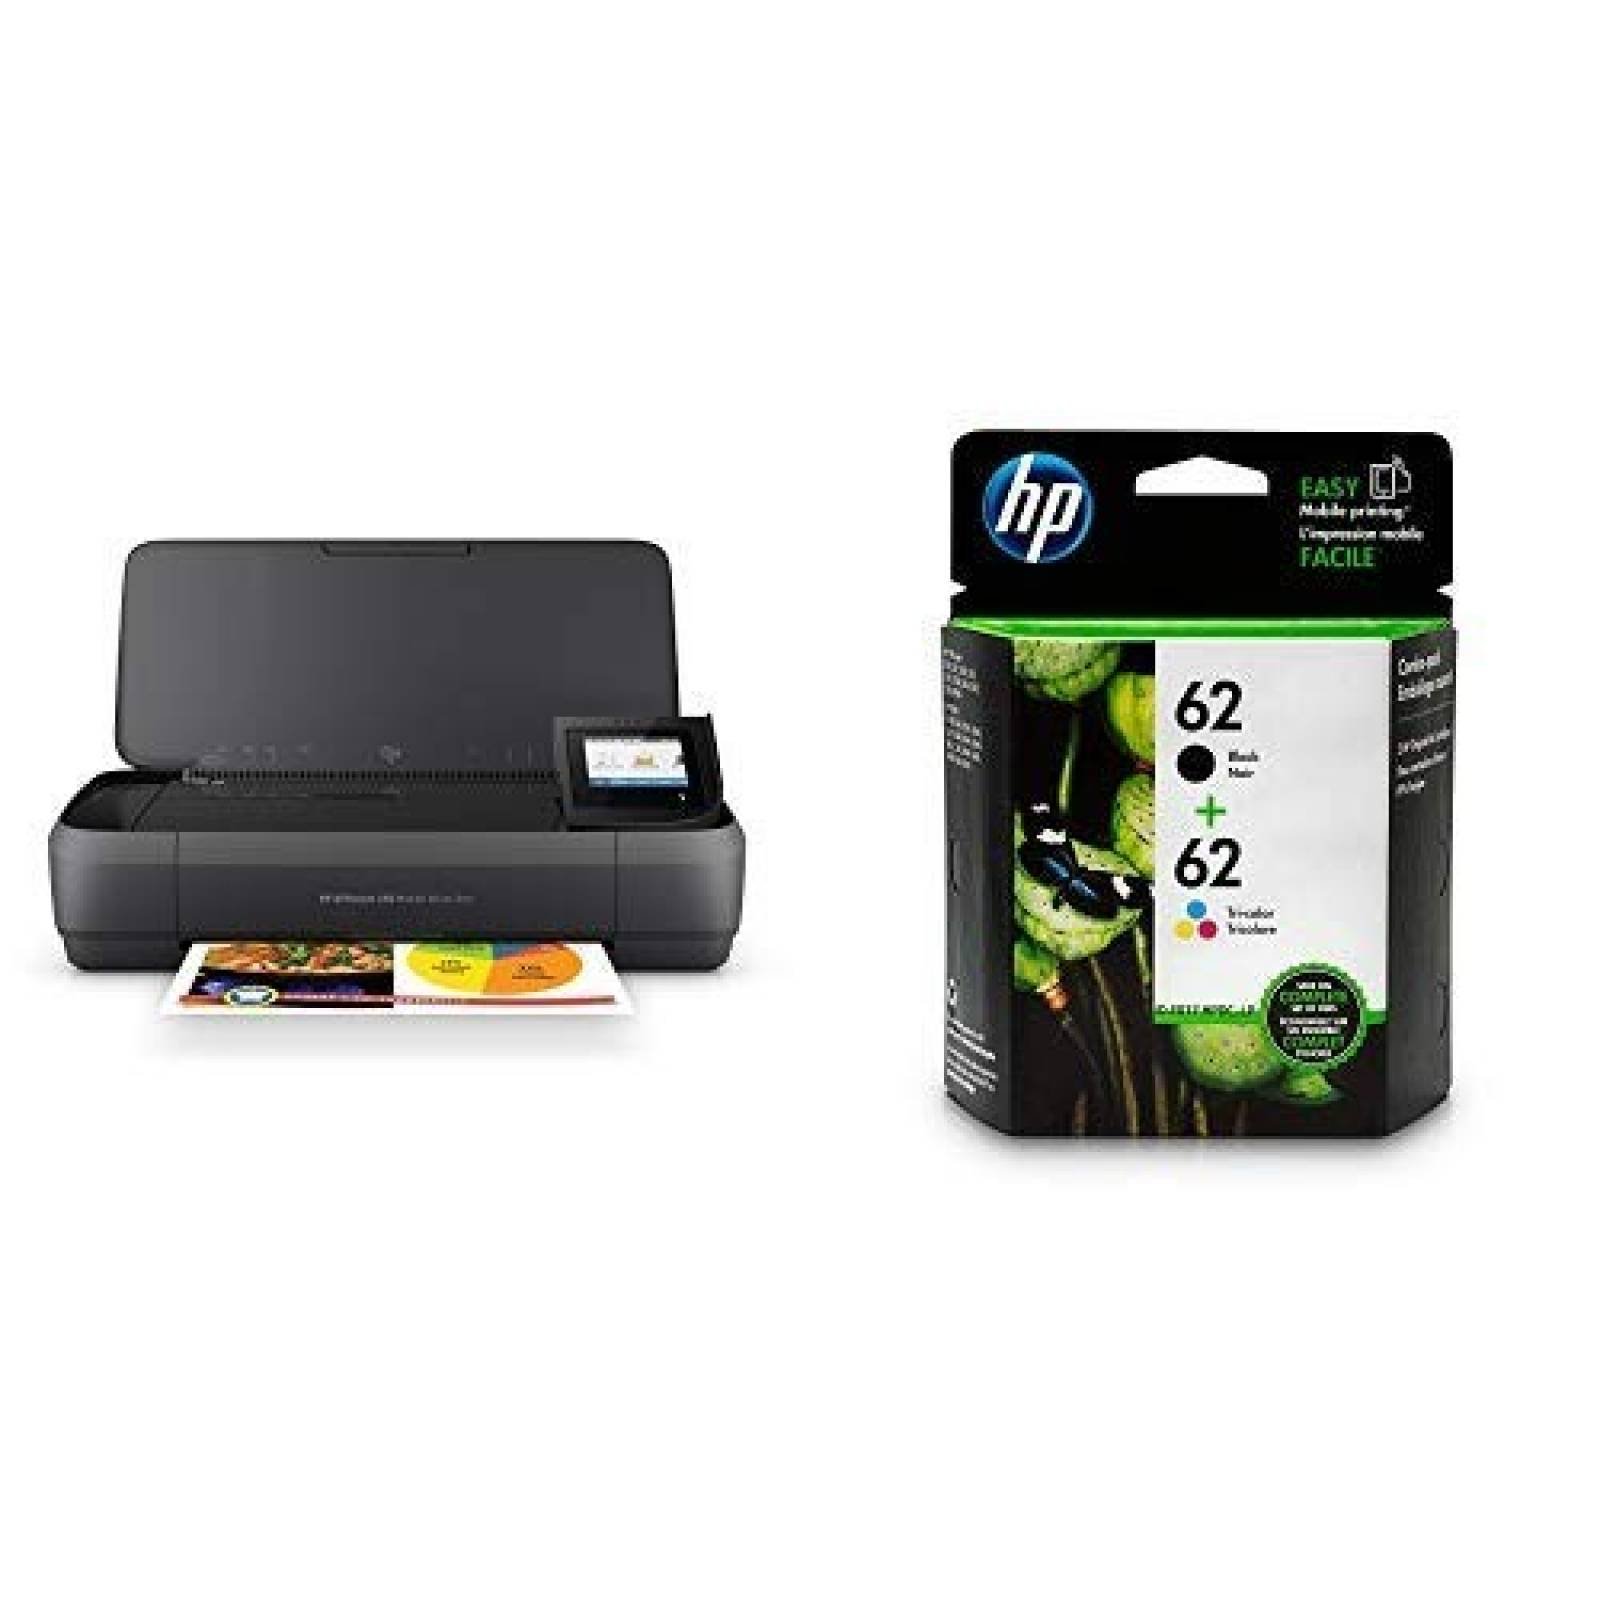 Impresora HP OfficeJet 250 cartuchos incluidos 4 colores